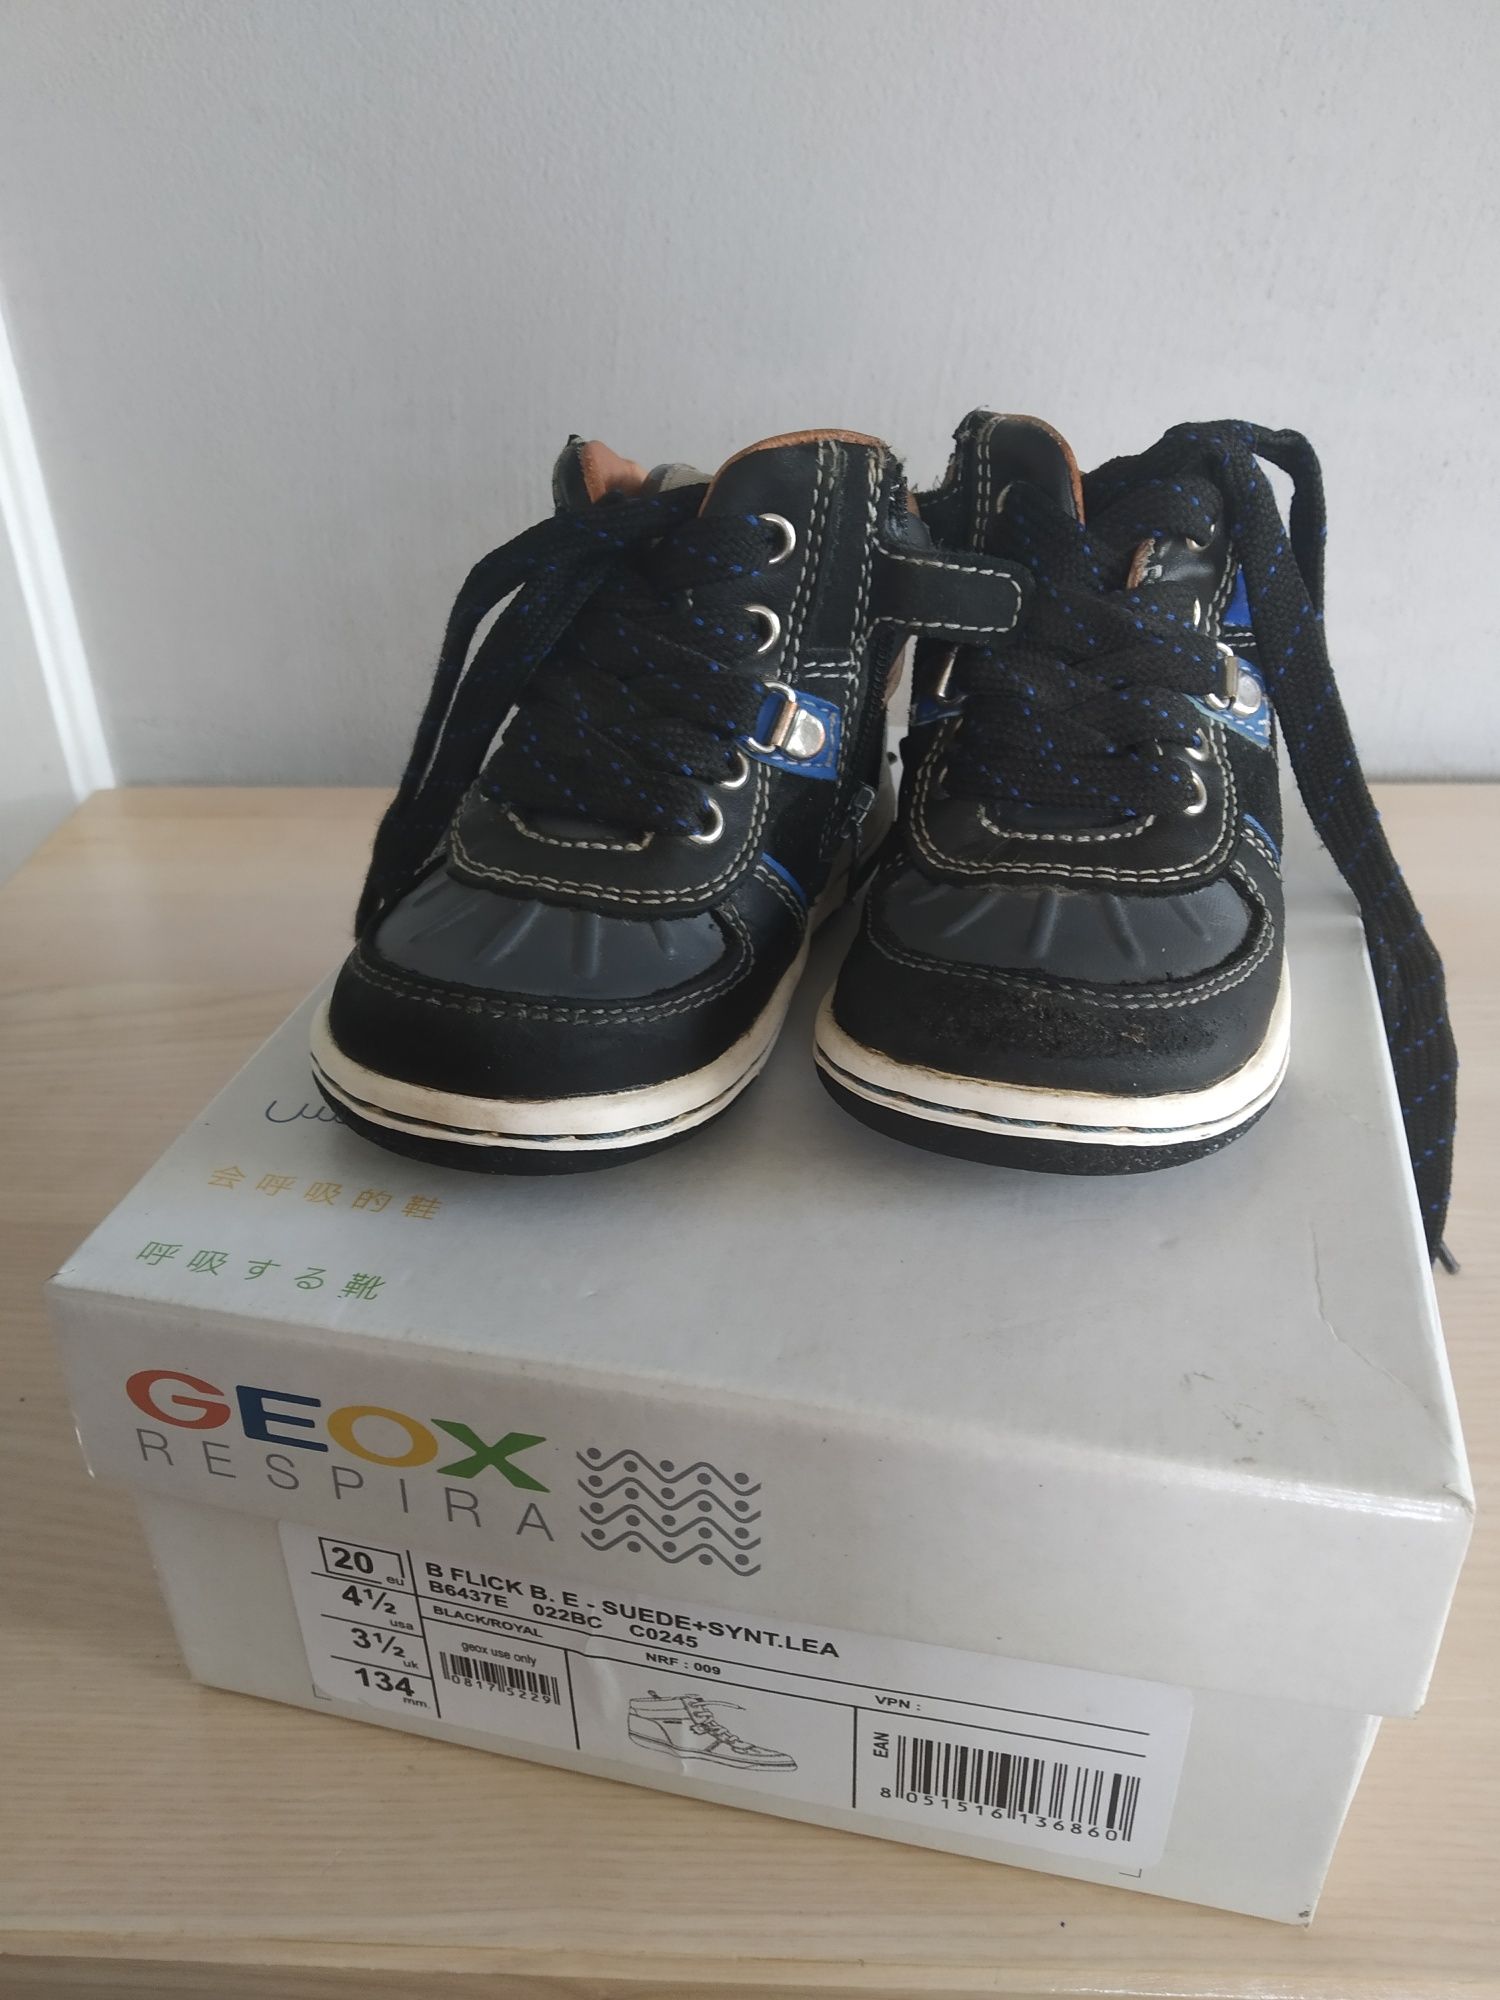 Trzewiki buty Geox Respira 20  dla chłopca